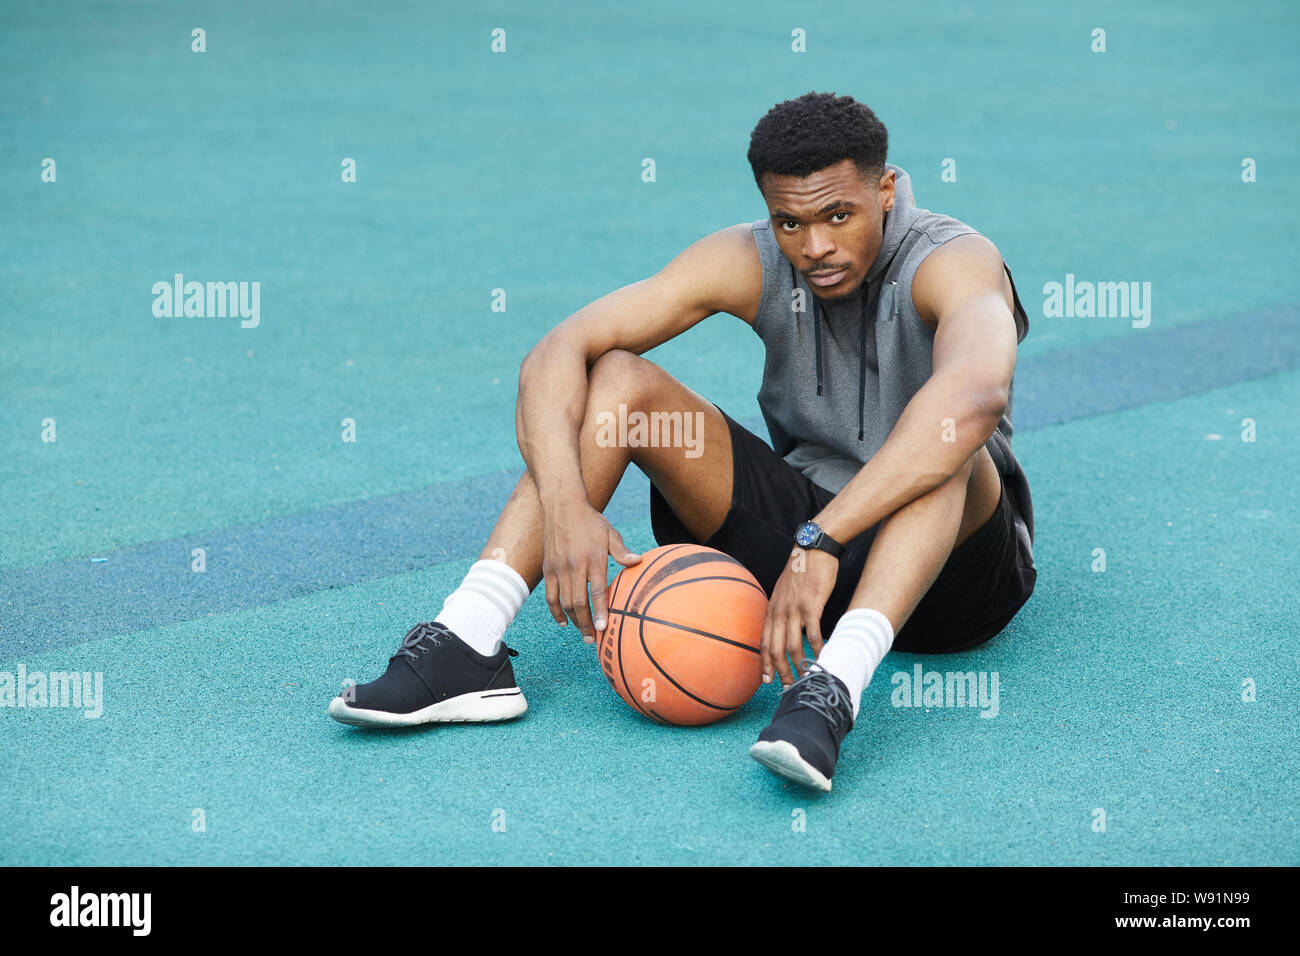 Portrait de beau sportif africain assis sur marbre en basket-ball et looking at camera, copy space Banque D'Images